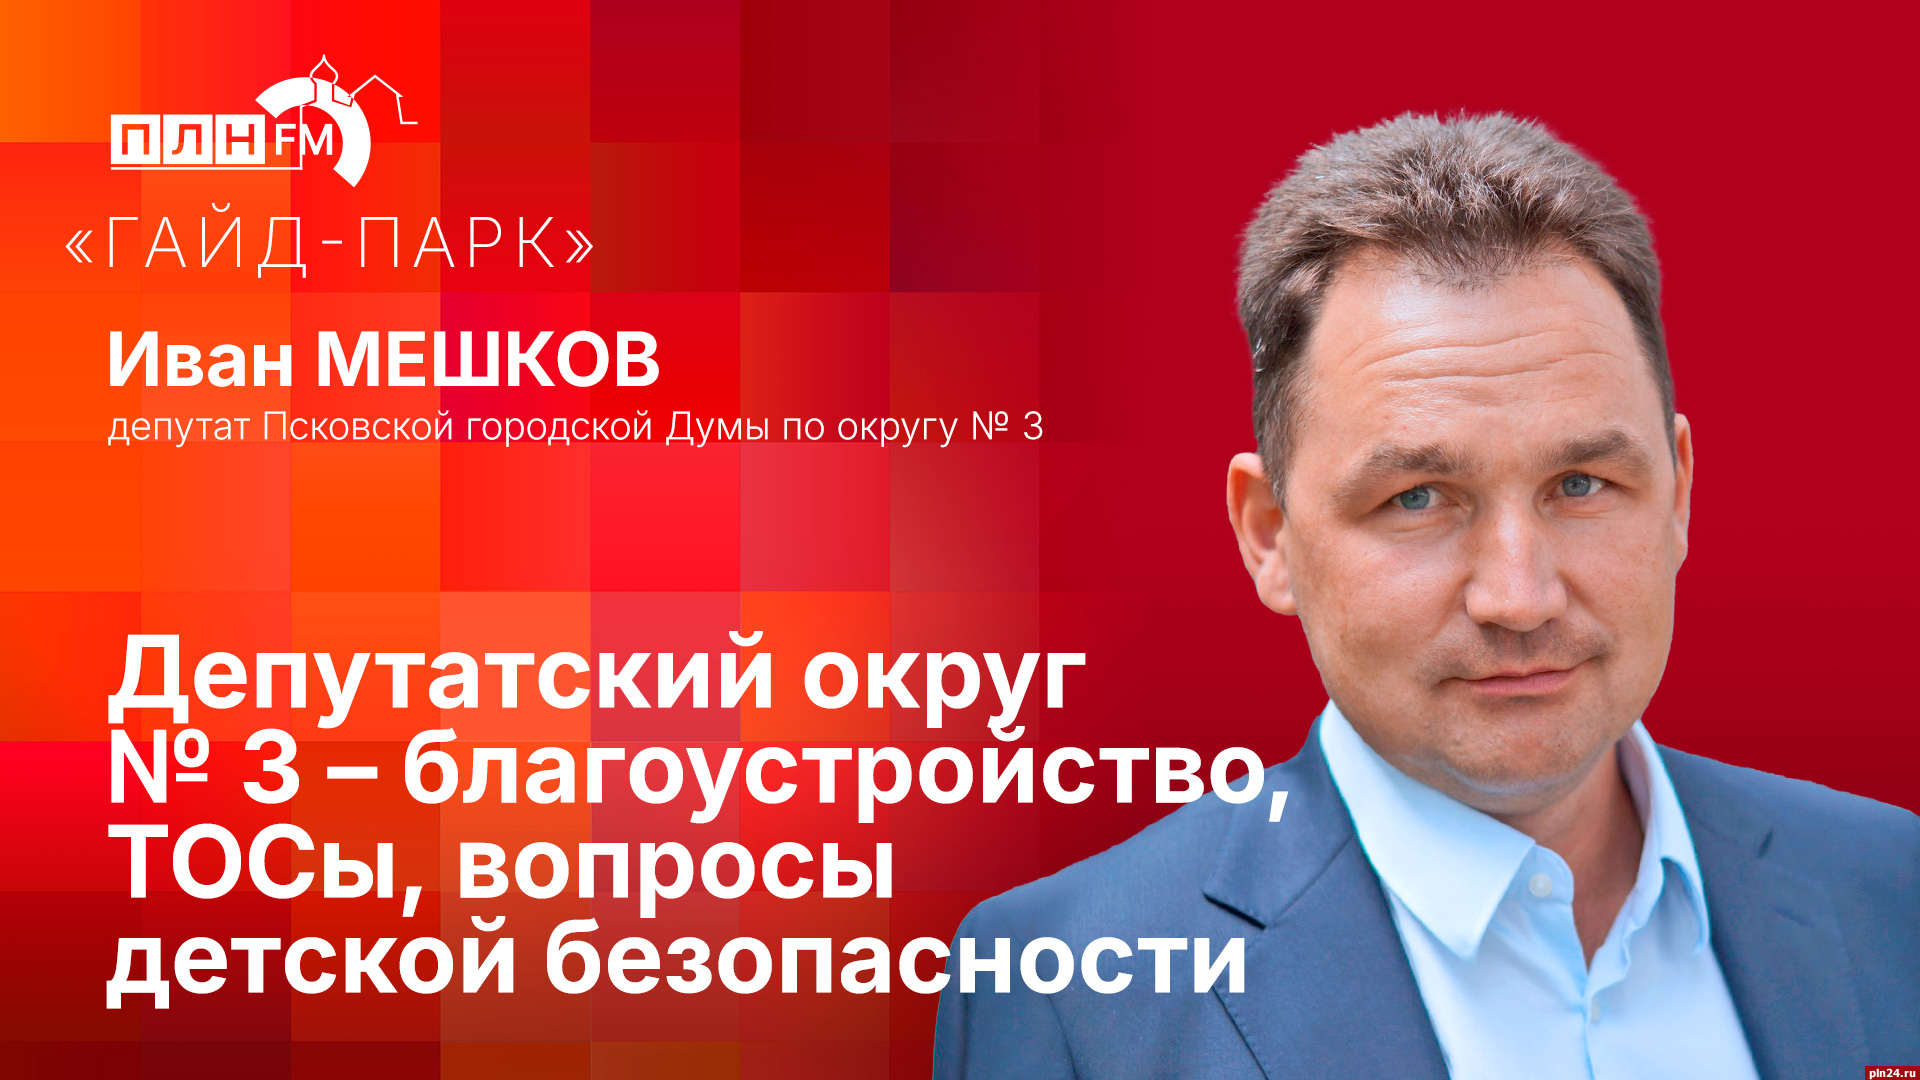 Начинается видеотрансляция программы «Гайд-парк» с депутатом Иваном Мешковым